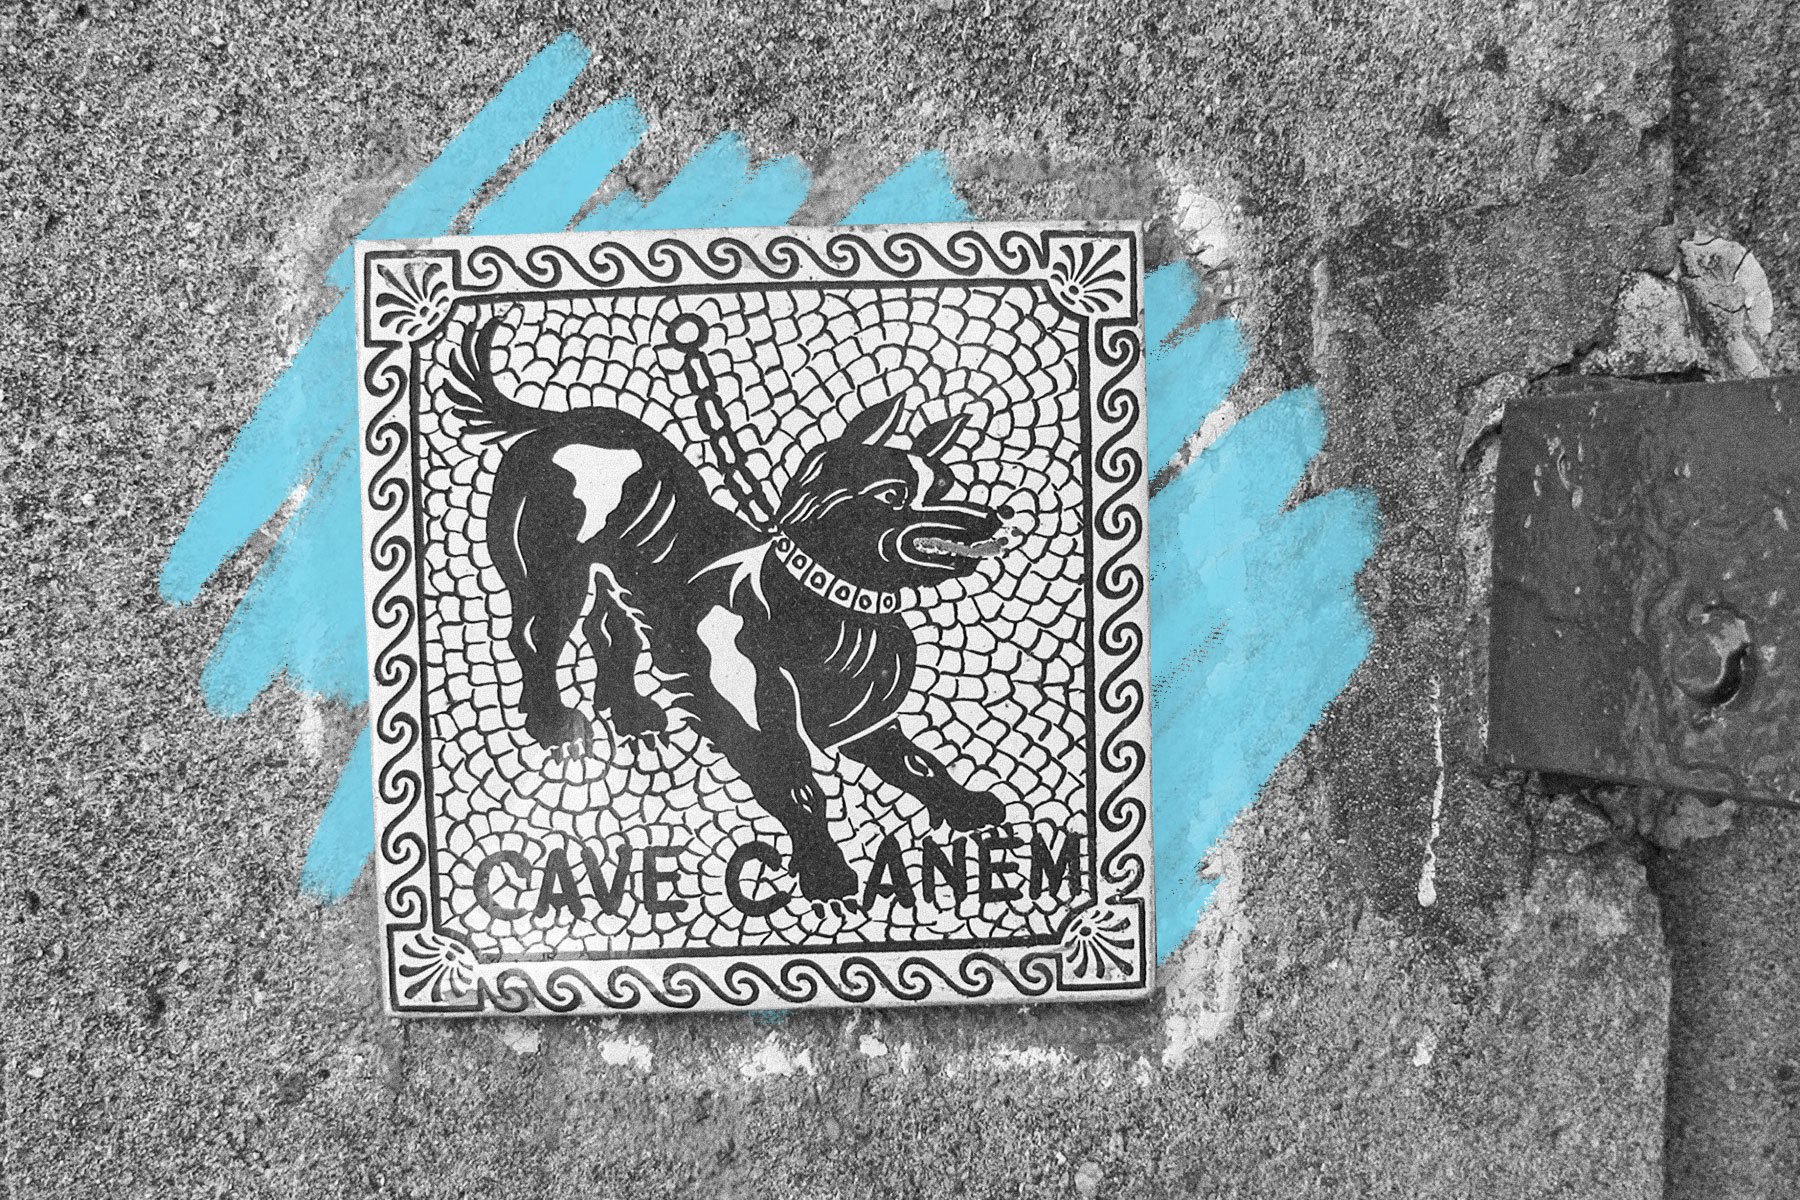 Cave Canem reproduction